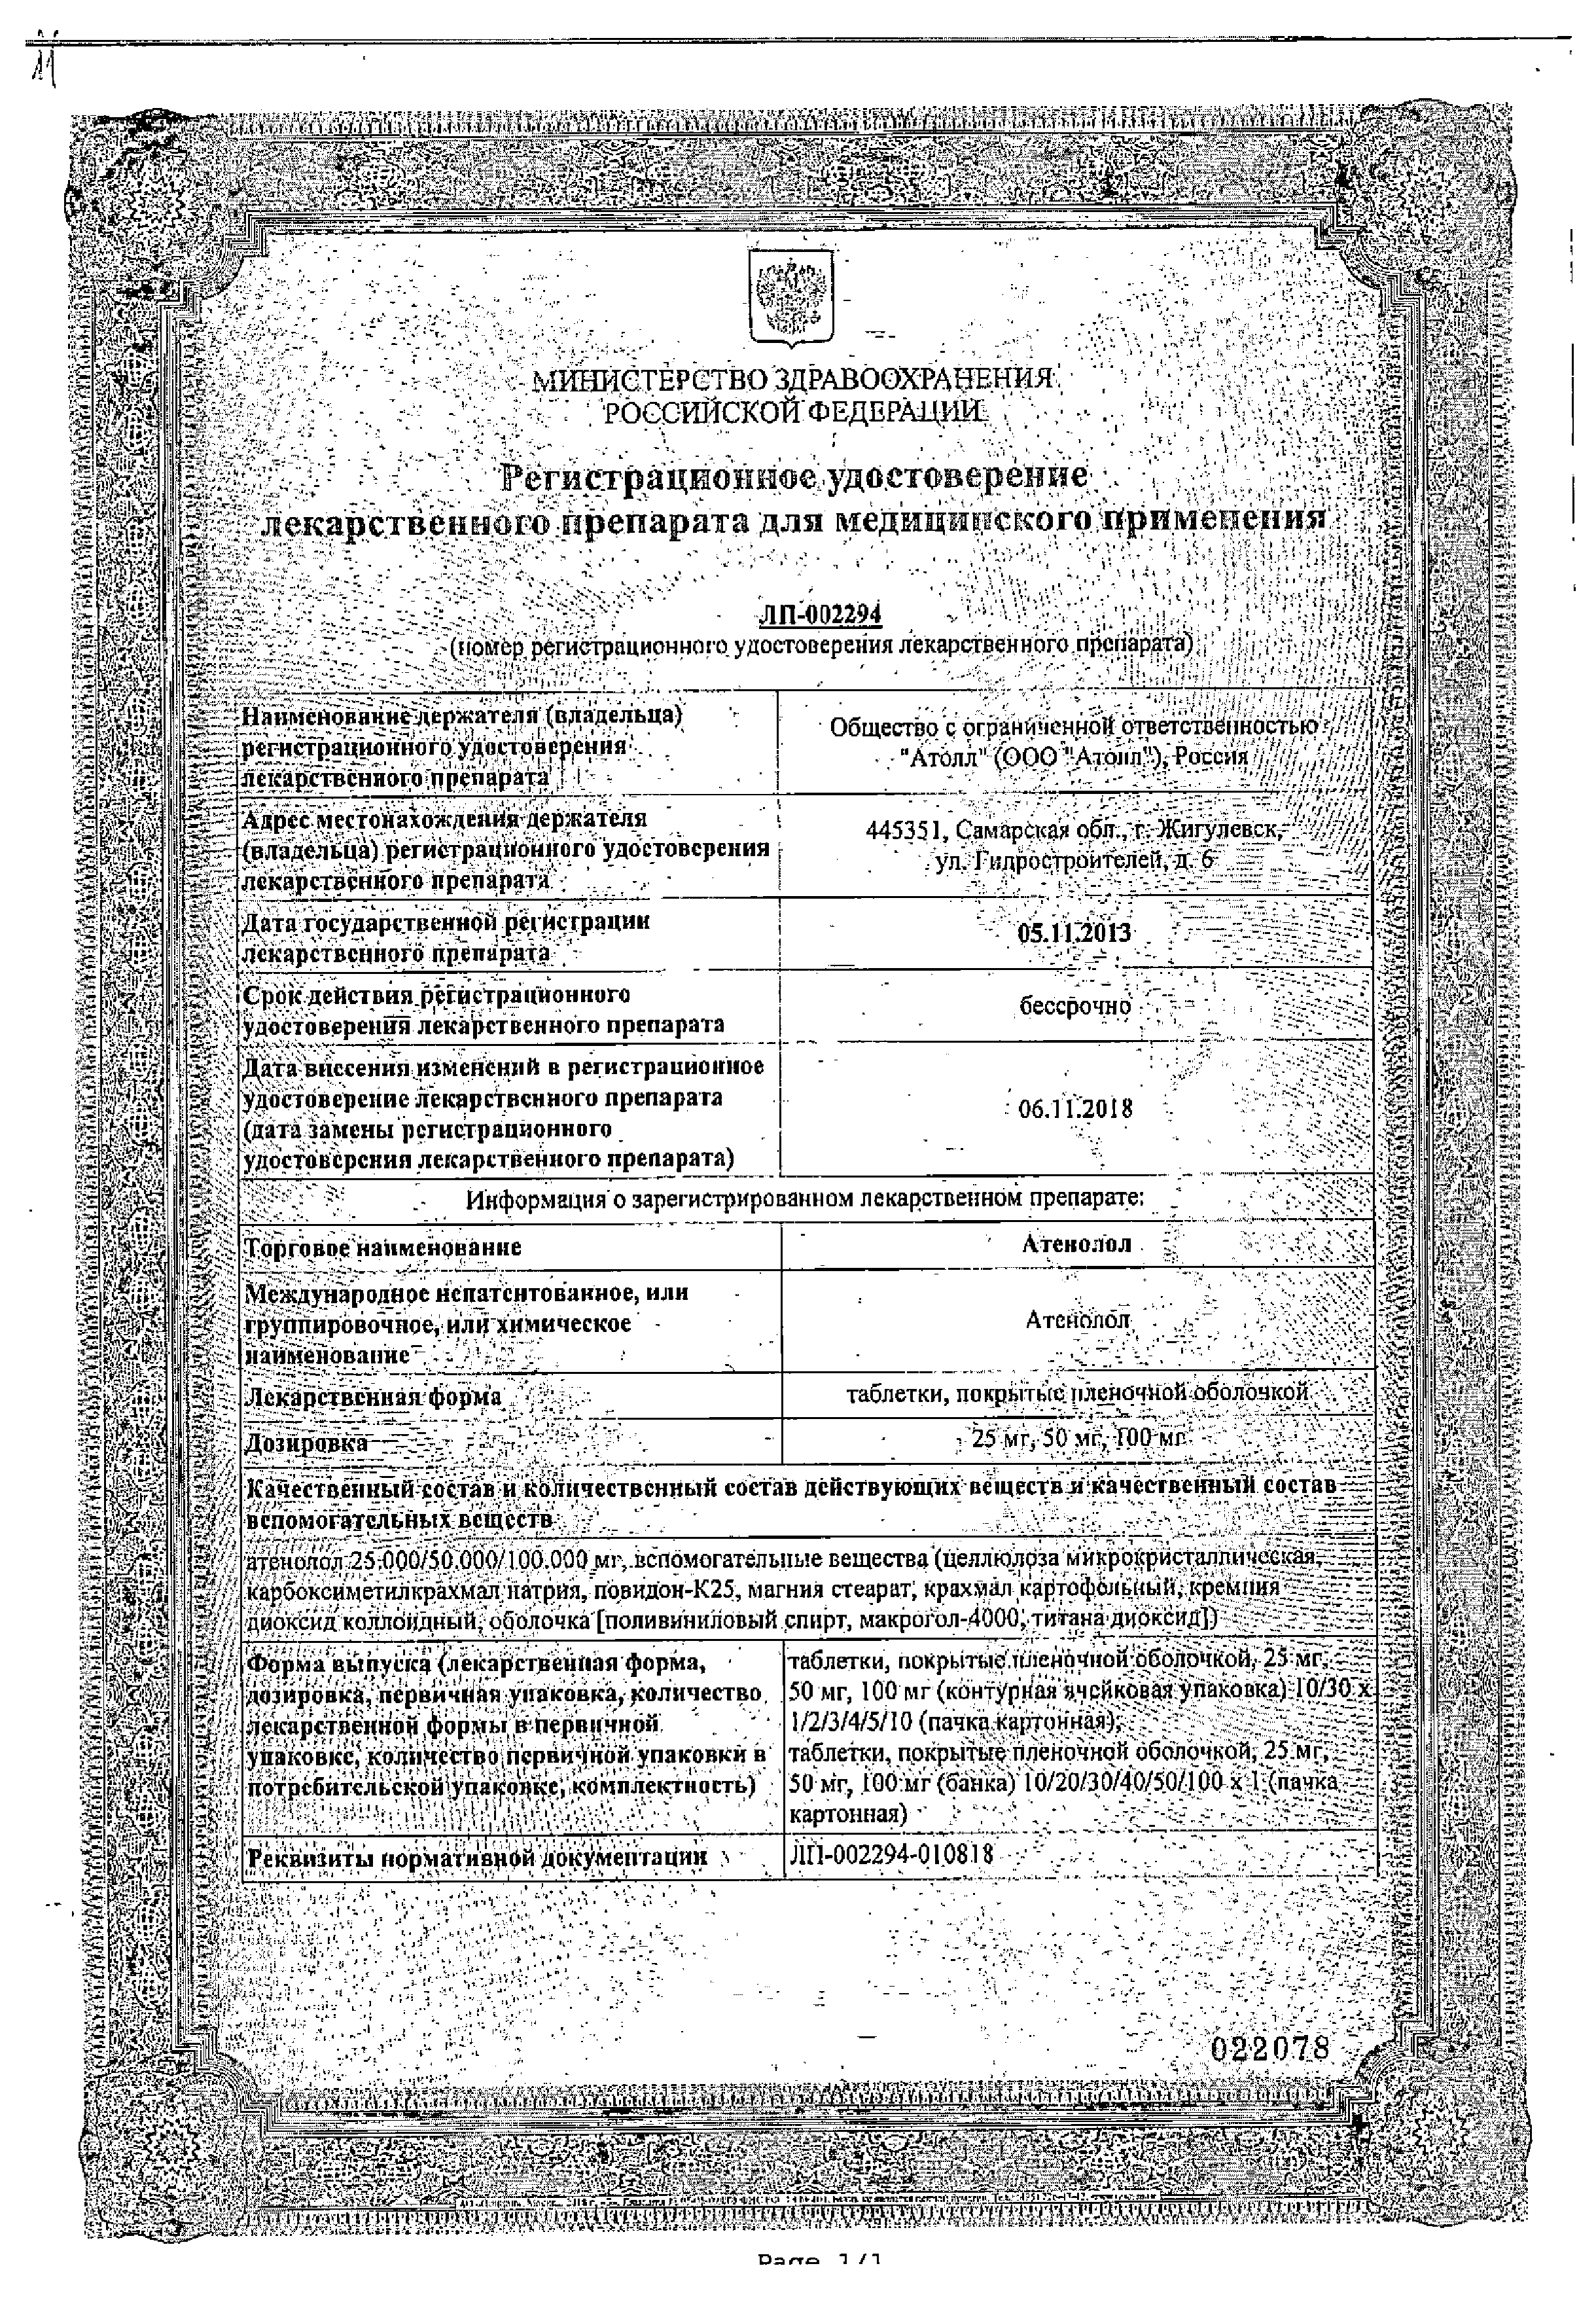 Атенолол сертификат